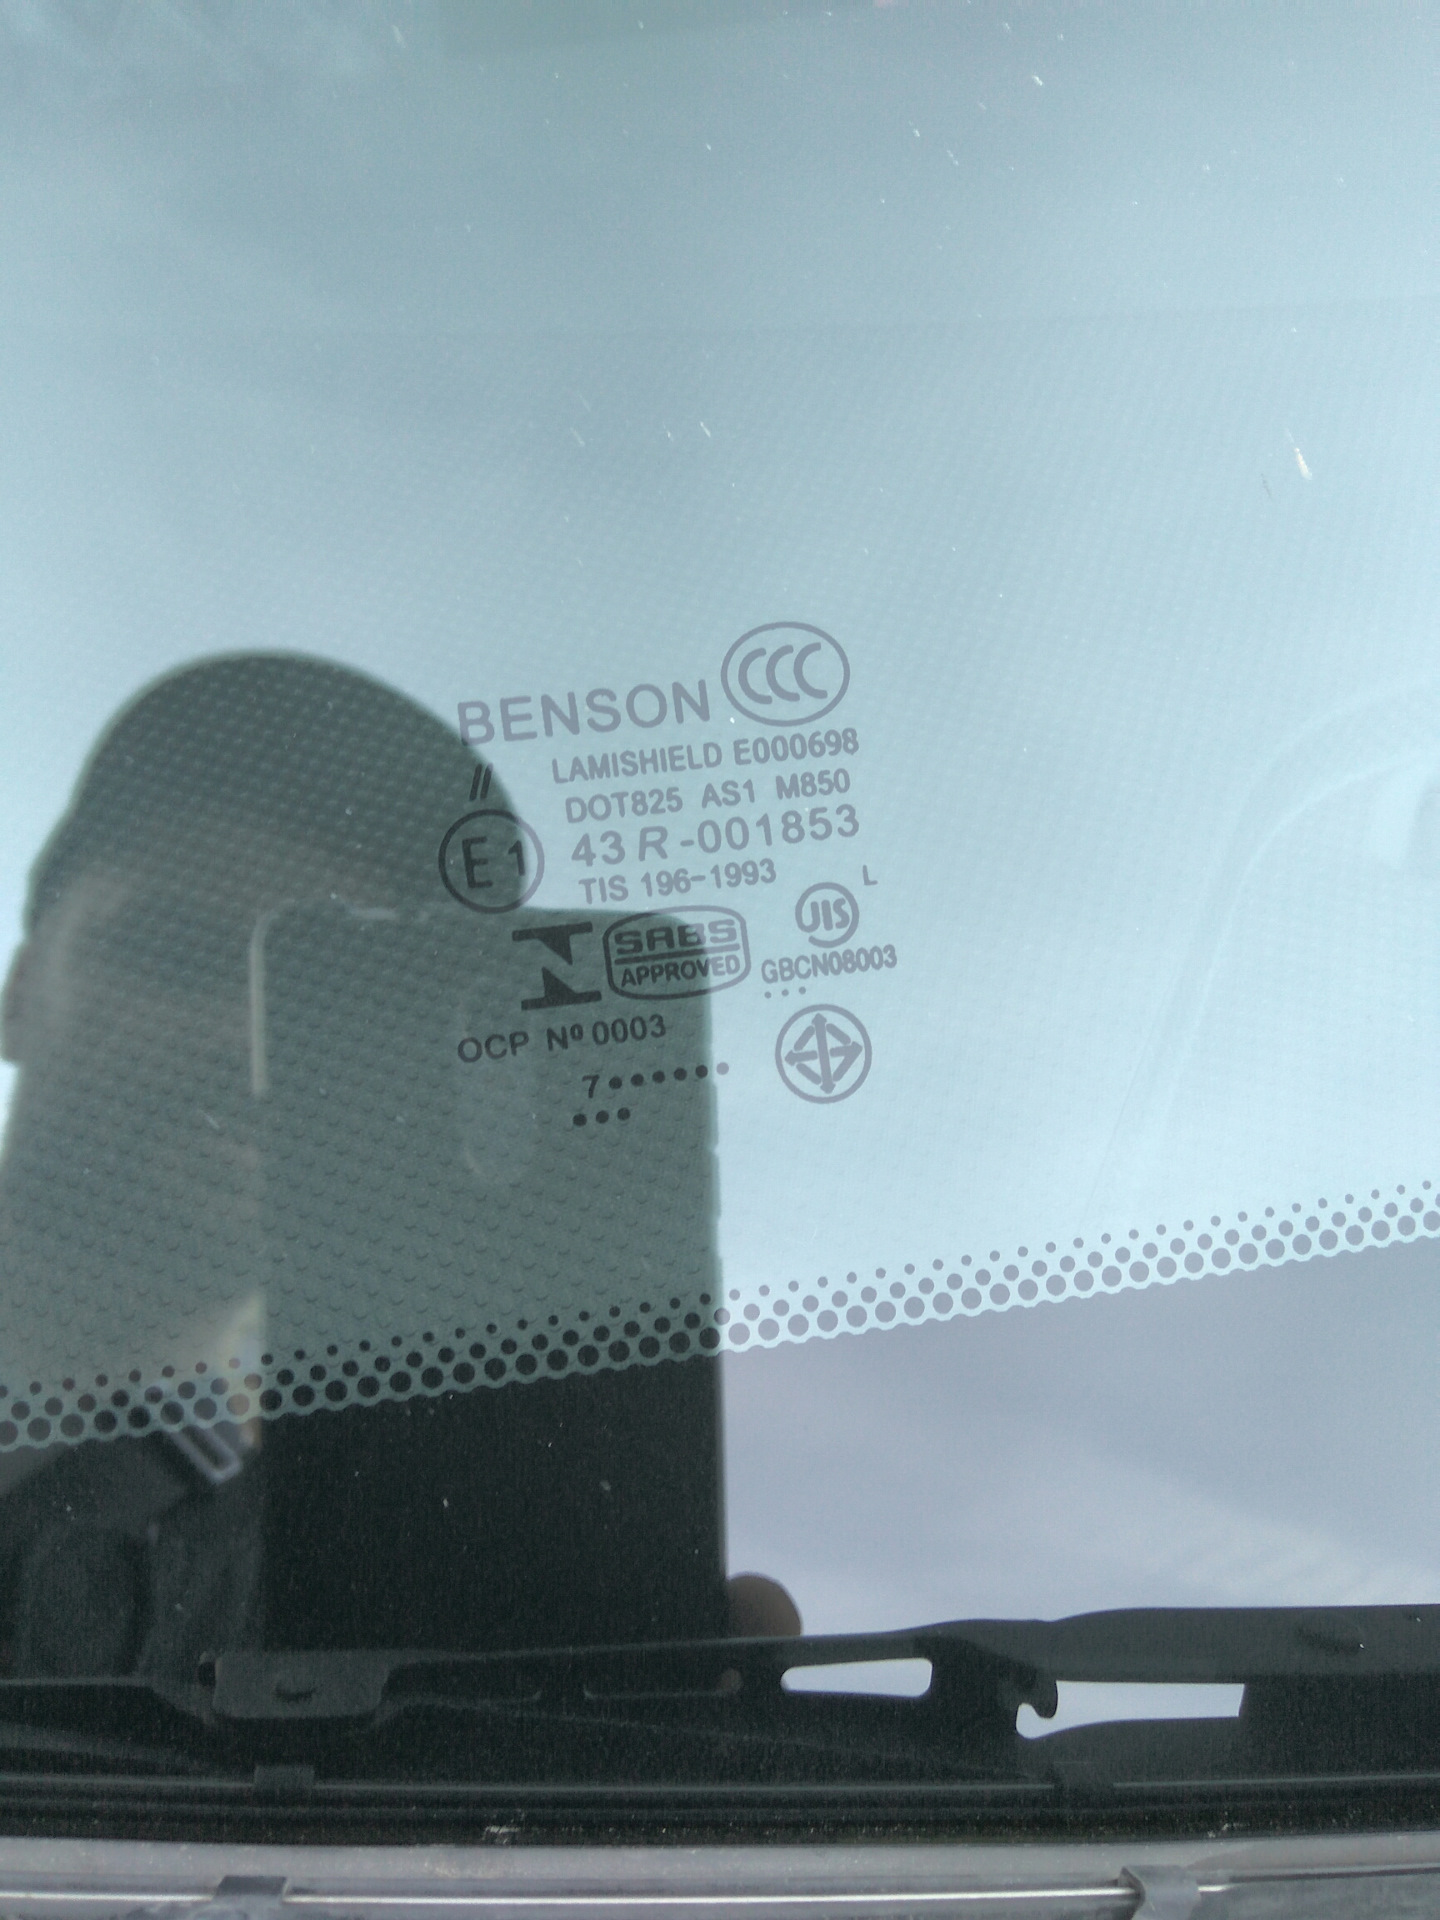 Стекло benson отзывы. Стекло лобовое Benson на Ситроен с5. F15 стекло Benson. Dot825 as1 m668. Benson a23 заднее маркировка.